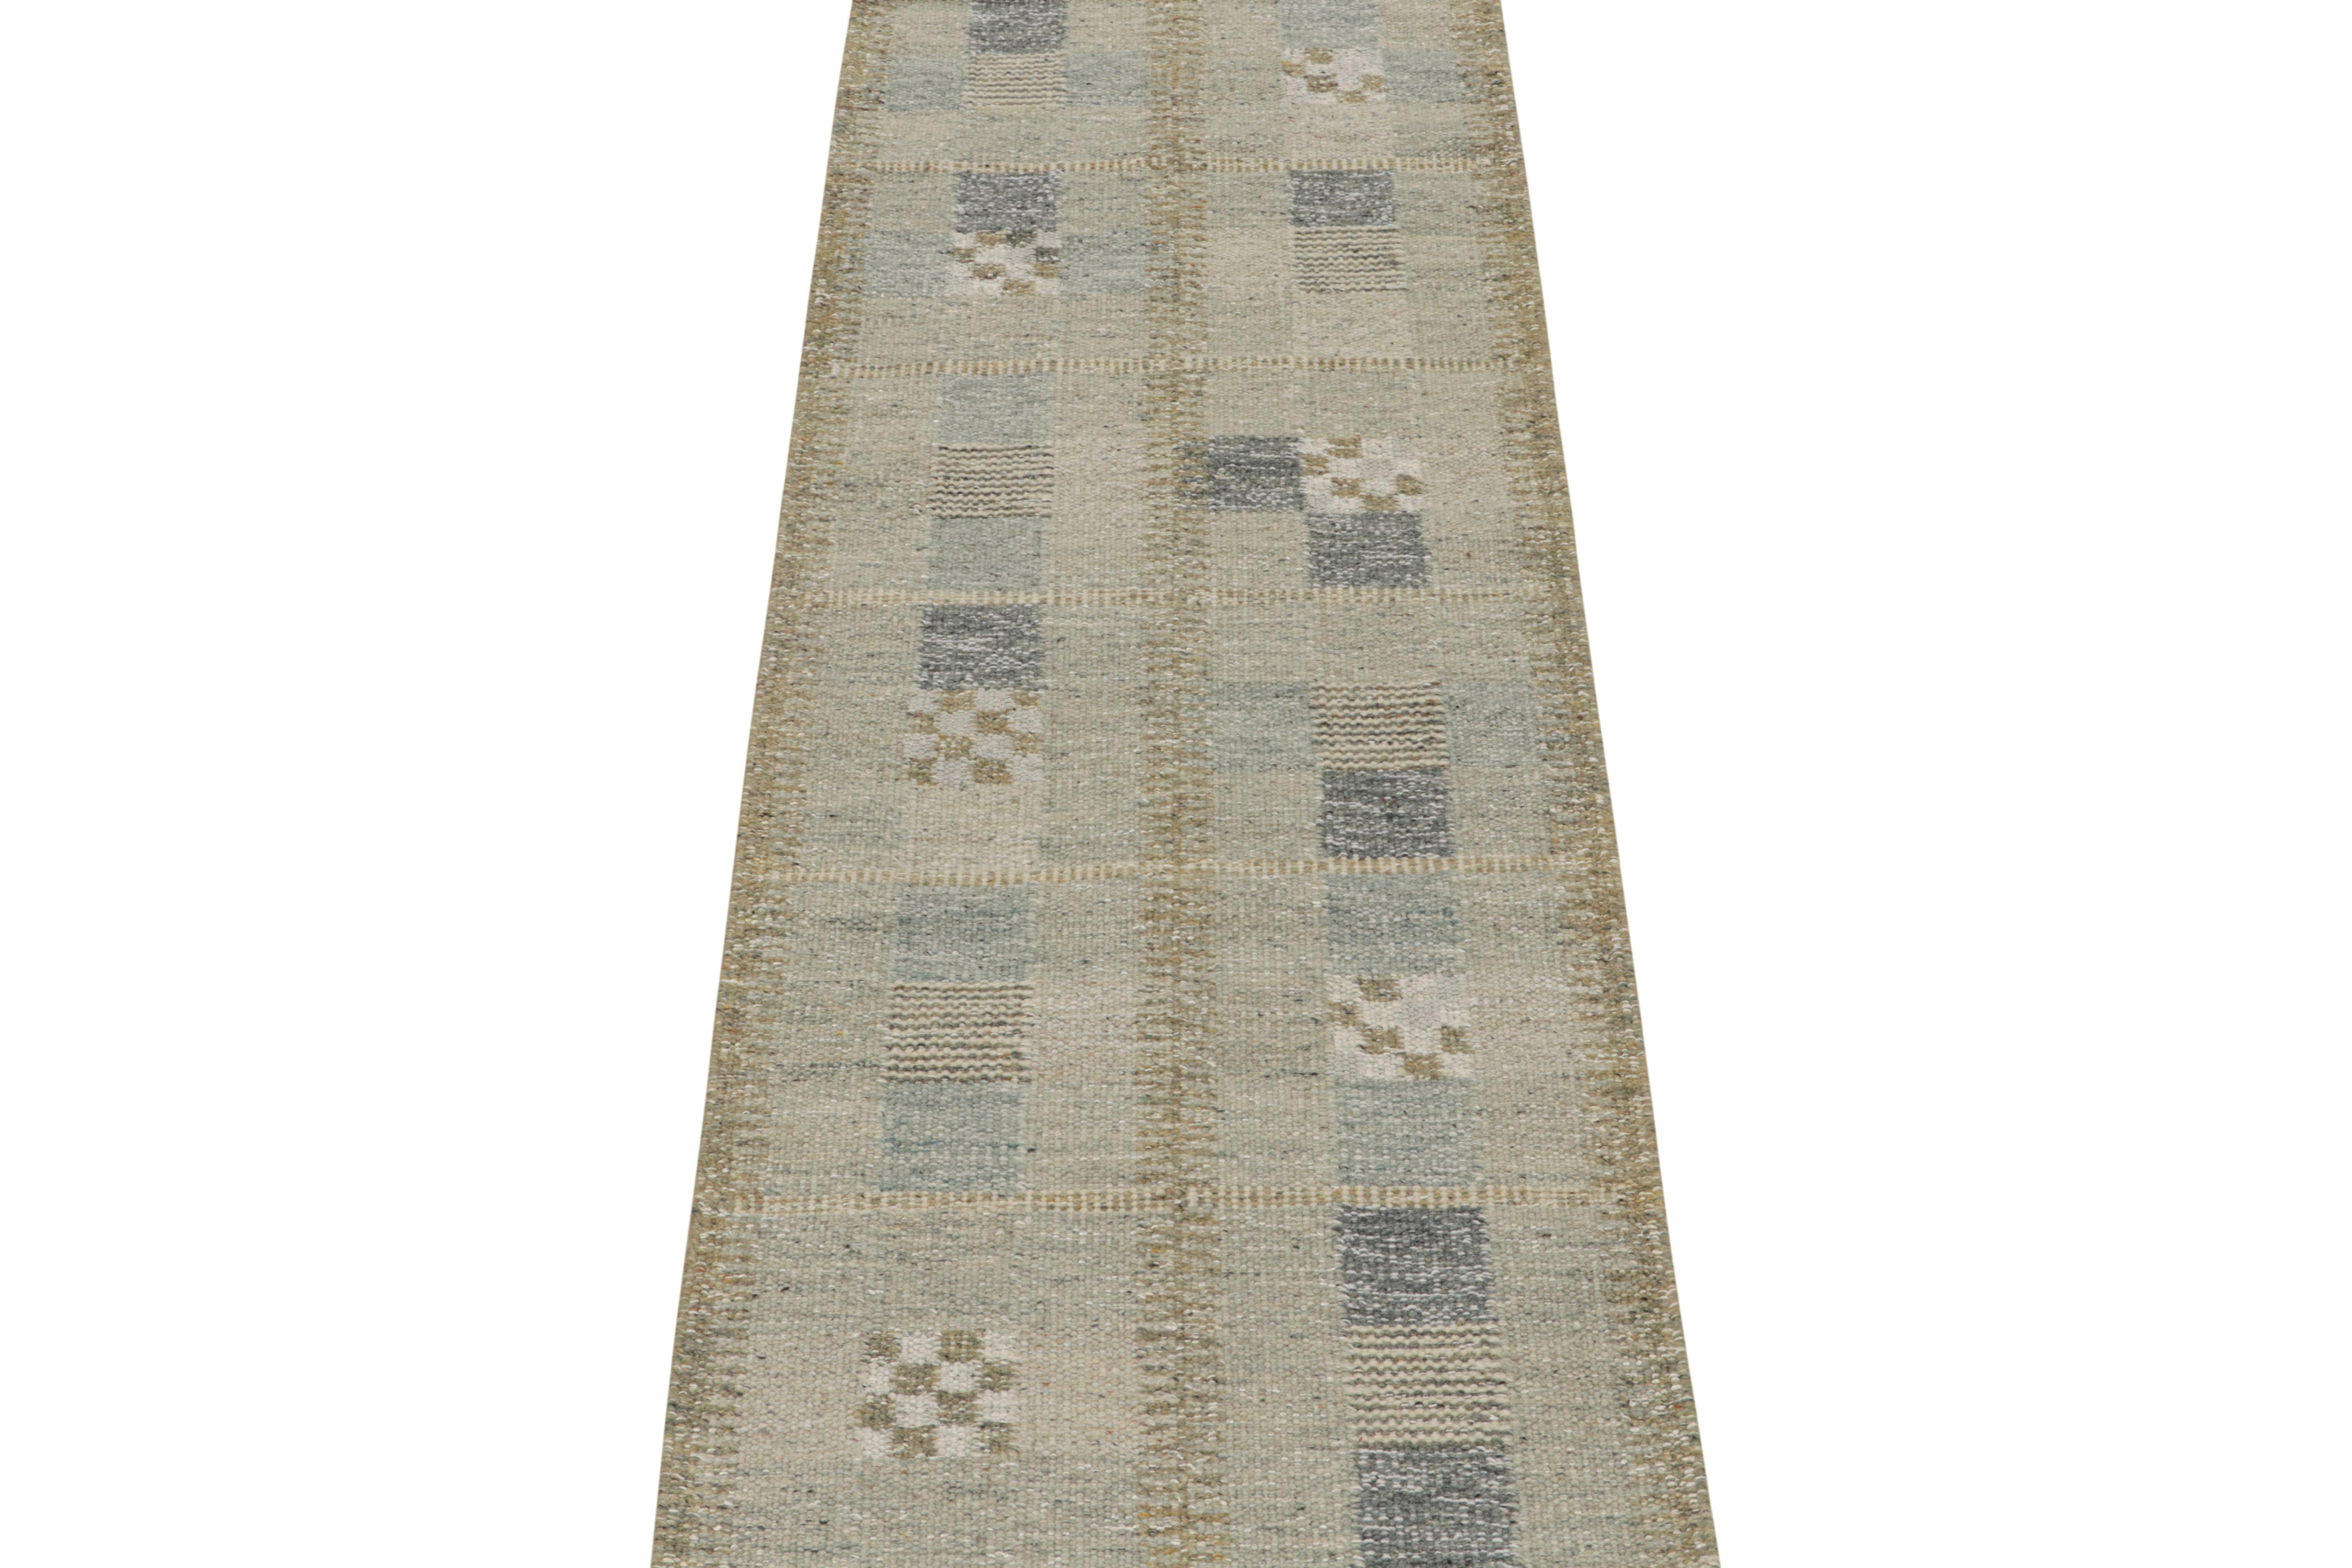 Un élégant kilim 3x8 de style suédois, issu de notre collection primée de tissage plat scandinave. Tissé à la main en laine et fil naturel non teint.

Sur le Design : 

Ce chemin de table présente des motifs géométriques dans des tons bleus et gris.